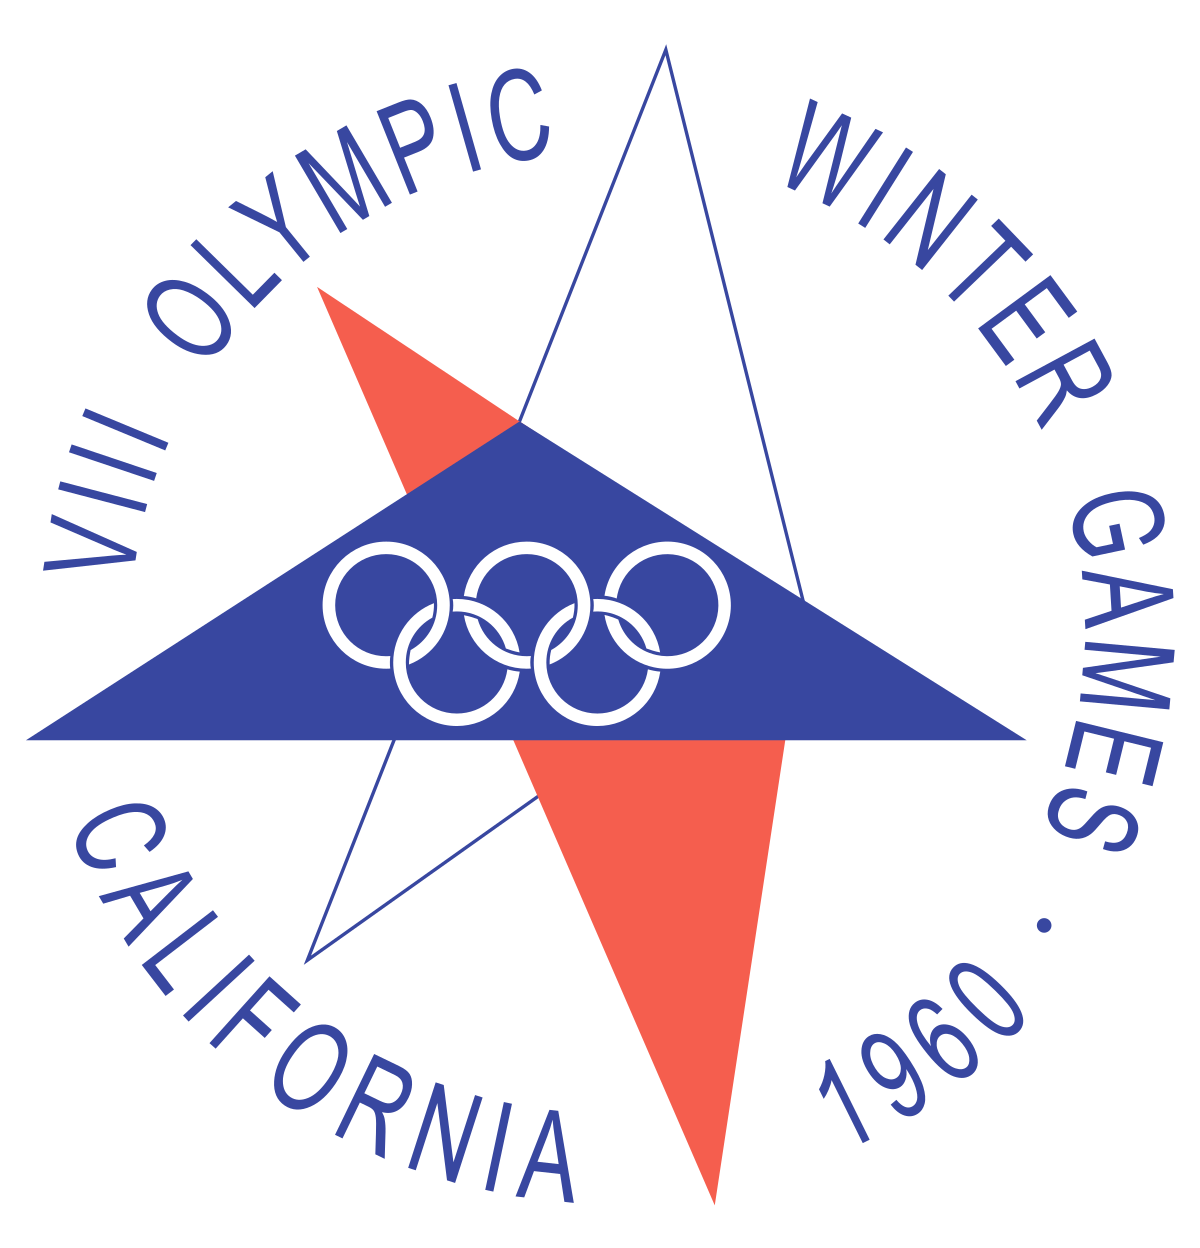 Ice hockey at the 1960 Winter Olympics - Wikipedia